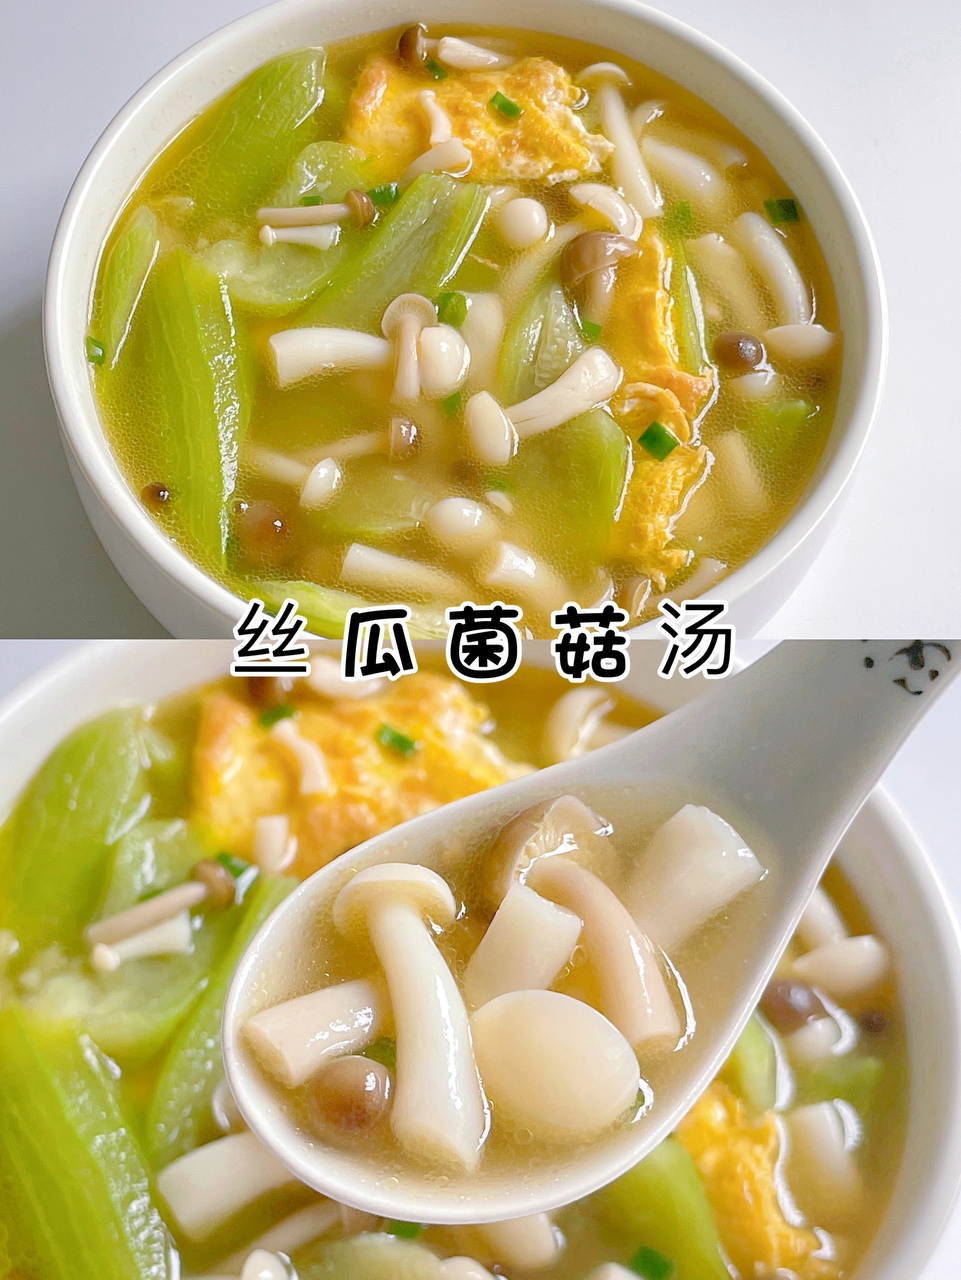 低脂低卡‼️鲜美快手汤‼️丝瓜菌菇汤‼️好吃不胖天的做法